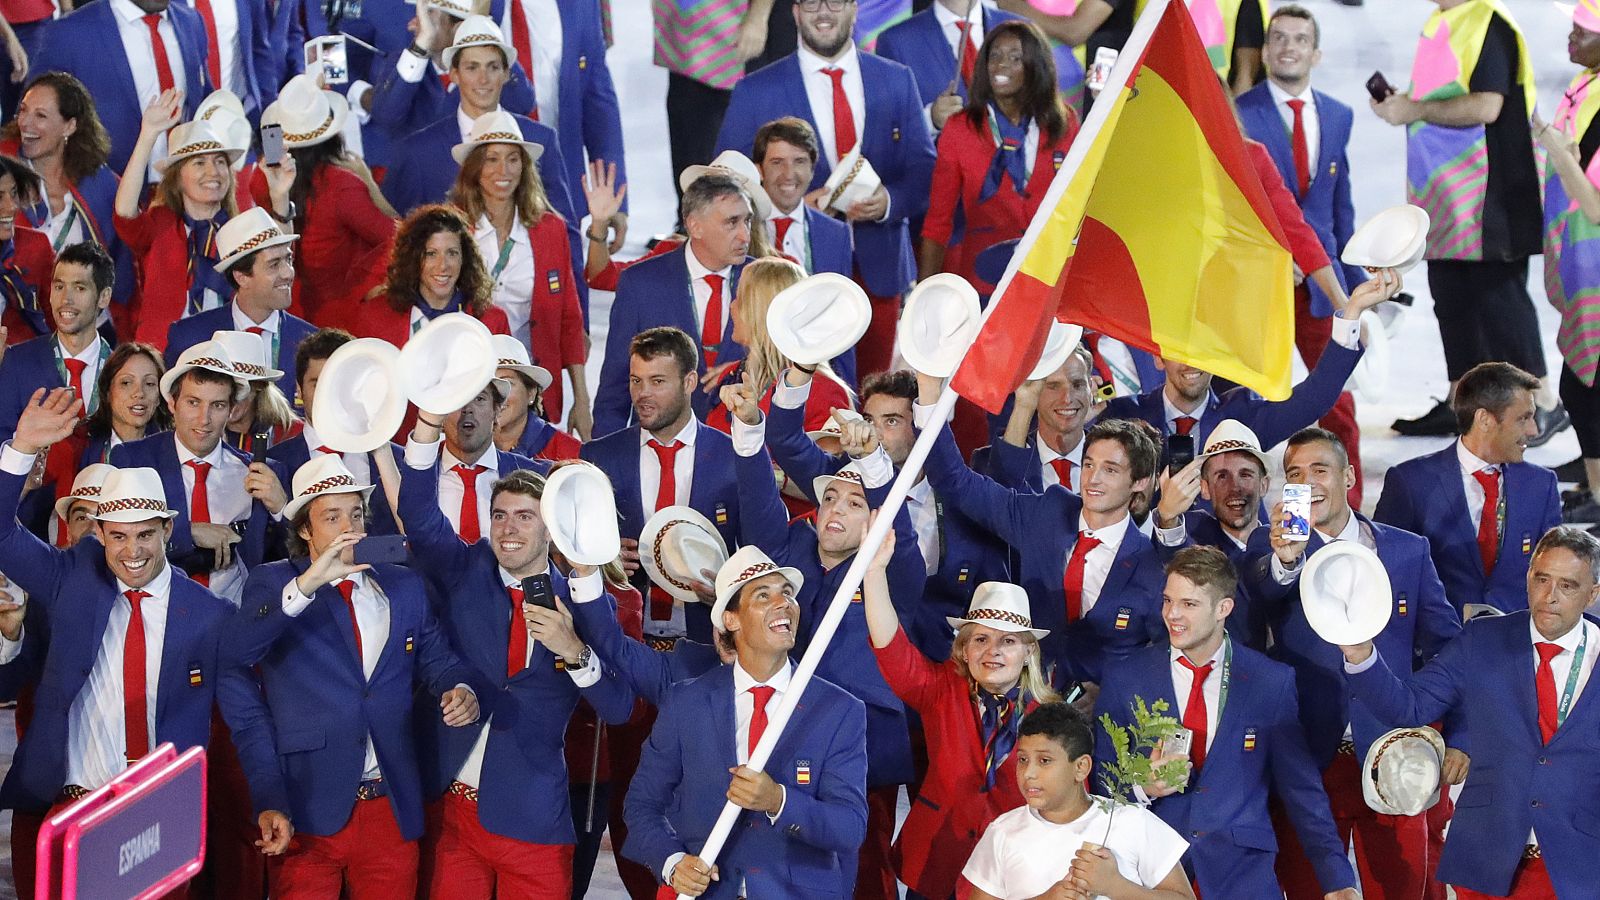 Rafael Nadal encabeza el equipo olímpico de España en la ceremonia inaugural de los Juegos Olímpicos Río 2016.